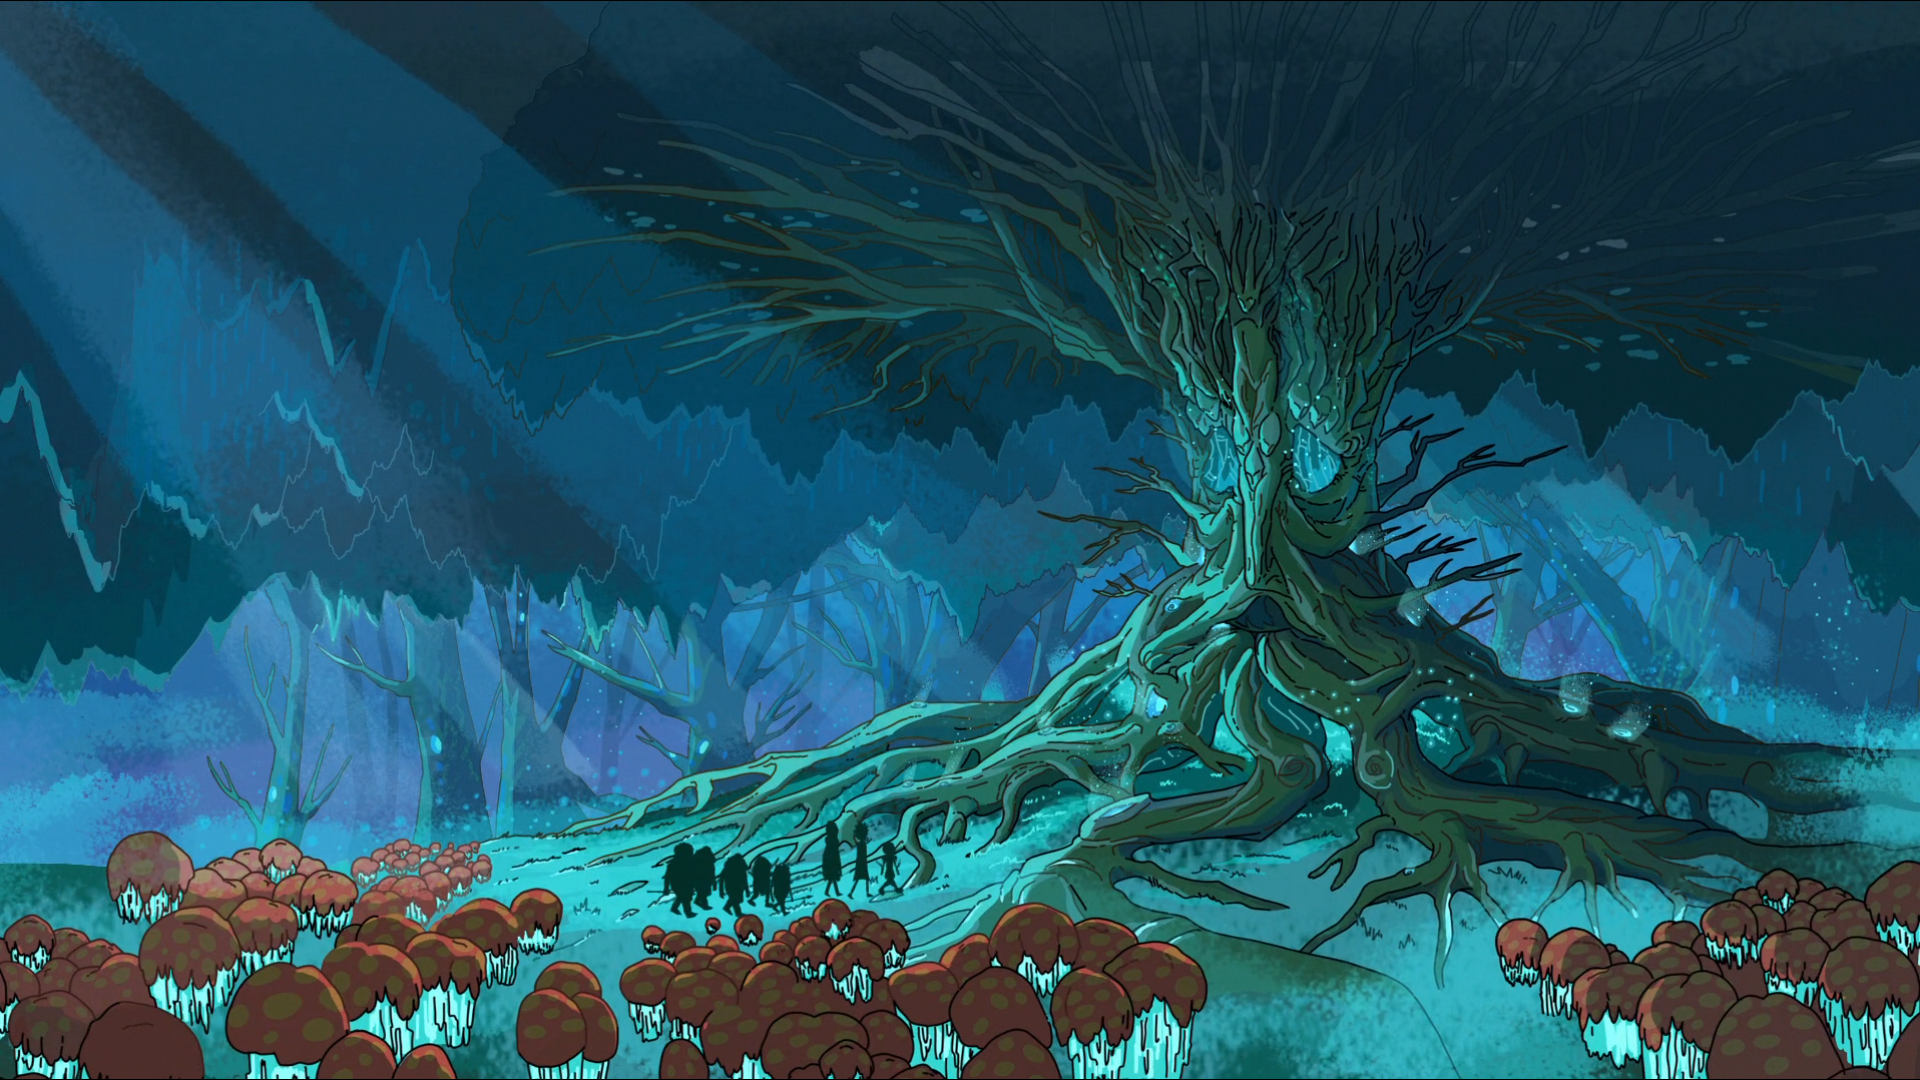 fondo de pantalla de rick y morty 1920x1080,juego de acción y aventura,captura de pantalla,cg artwork,ilustración,árbol